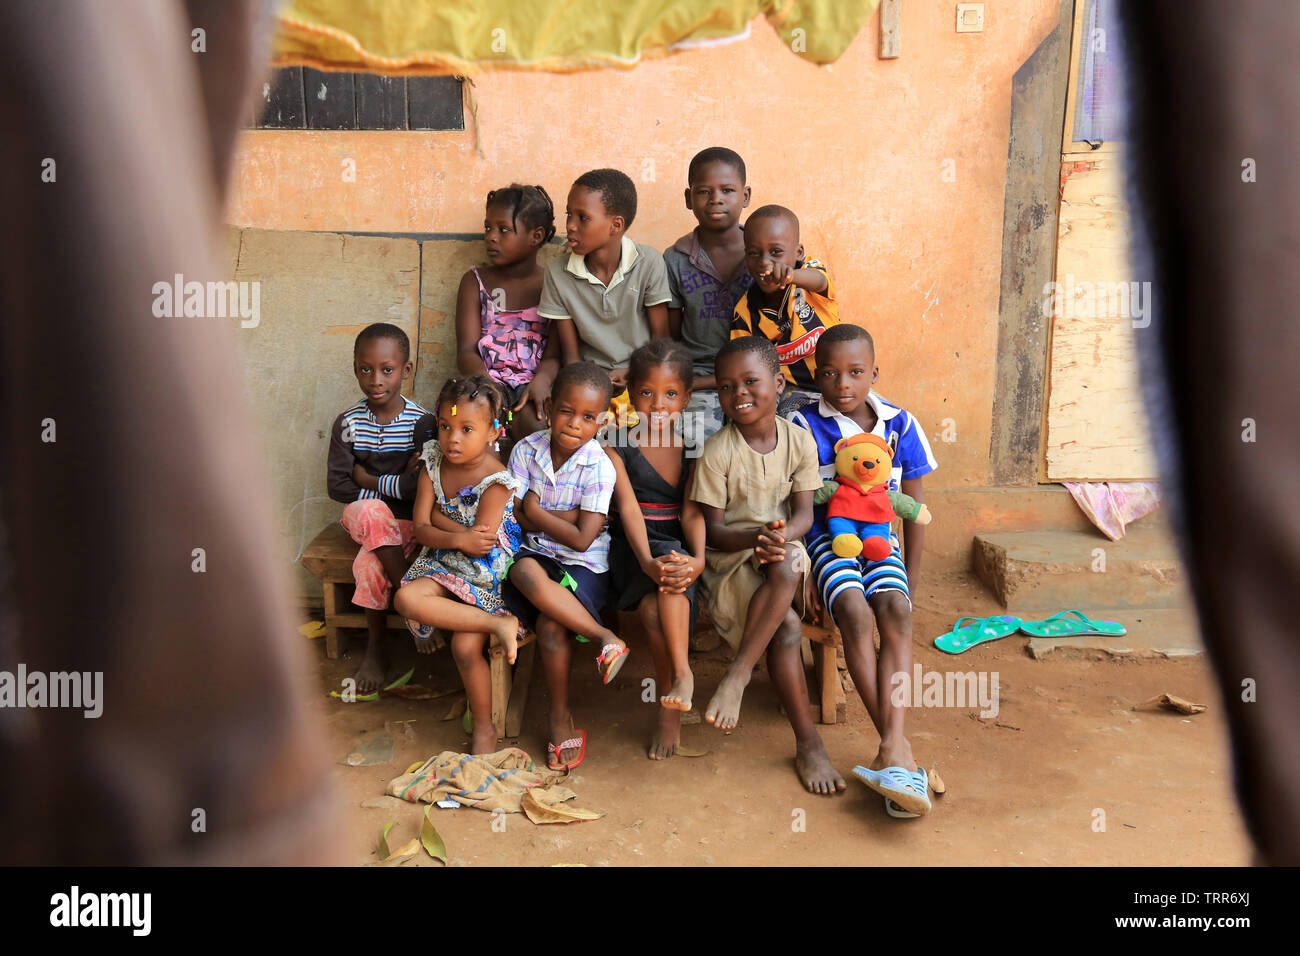 Groupe d'enfants assis sur onu banc. La convenzione di Lomé. Il Togo. Afrique de l'Ouest. Foto Stock